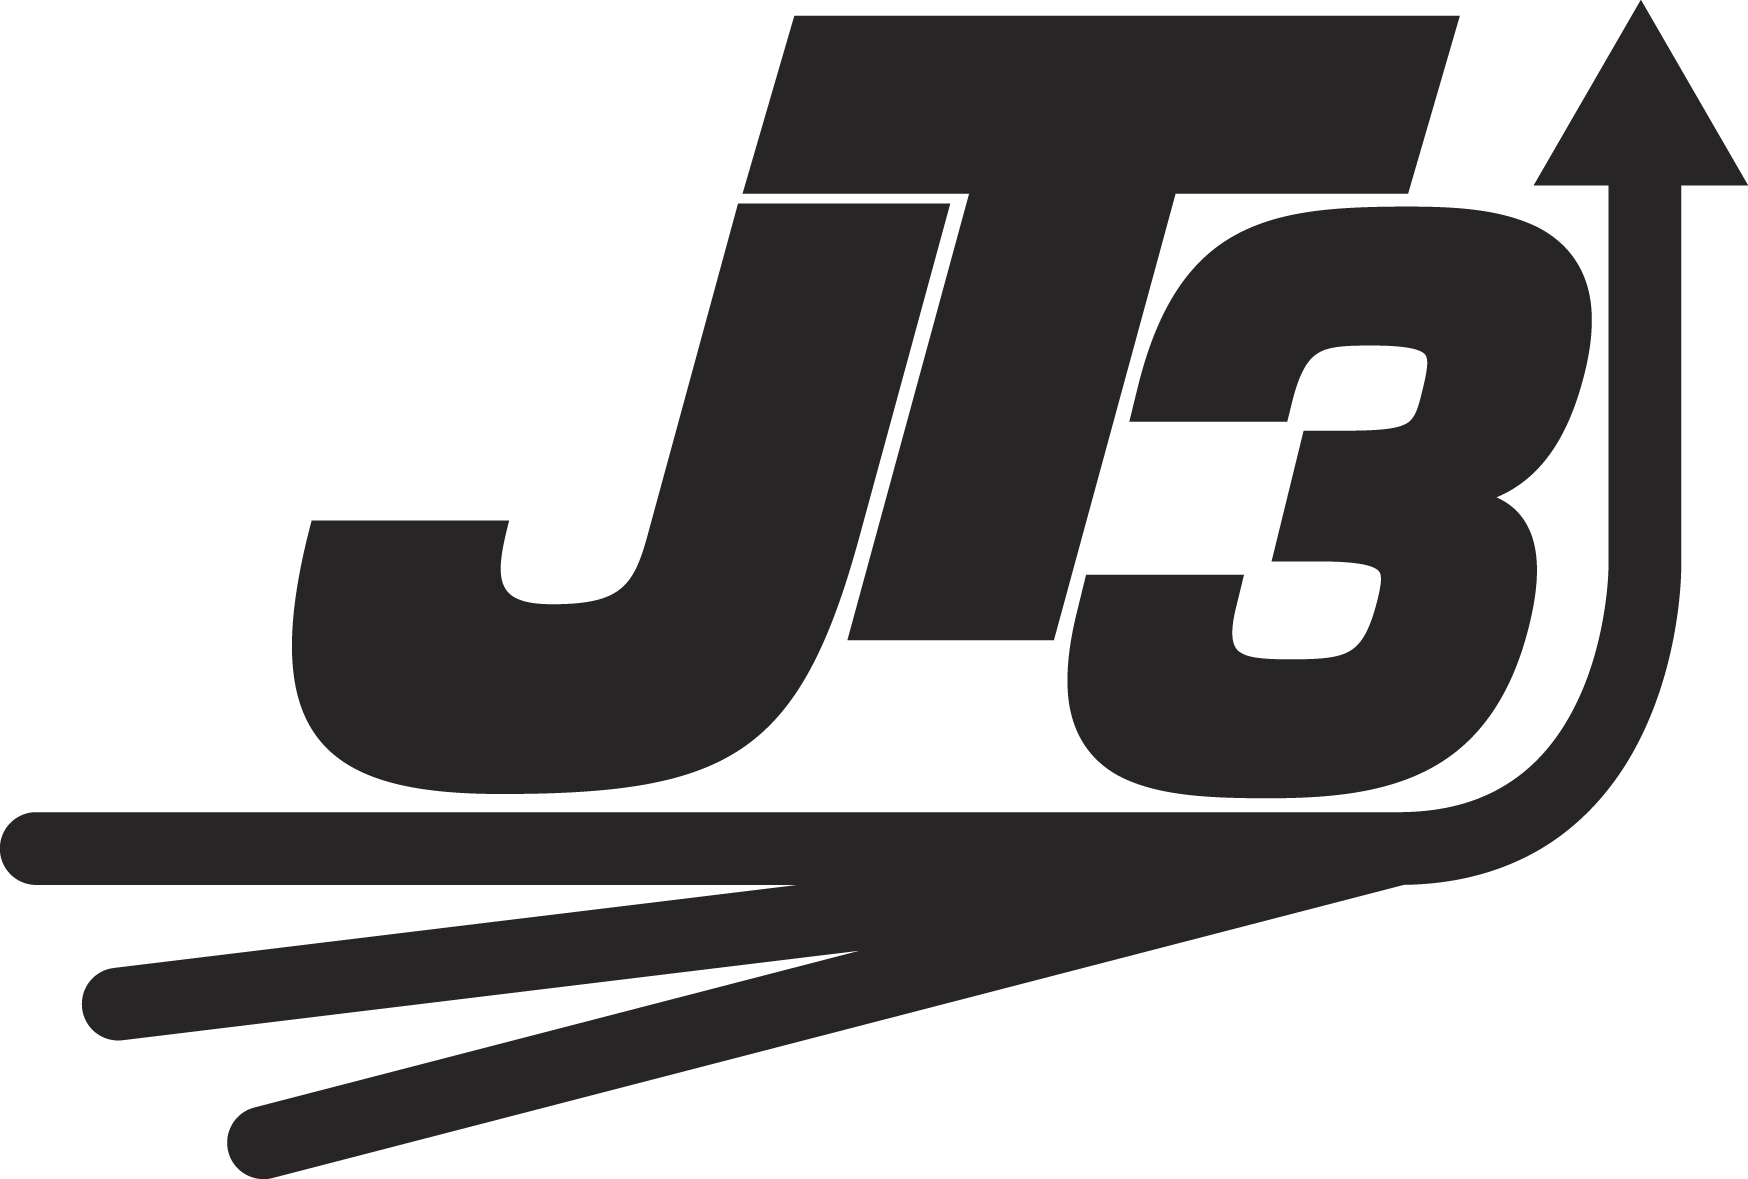 jt3 logo black